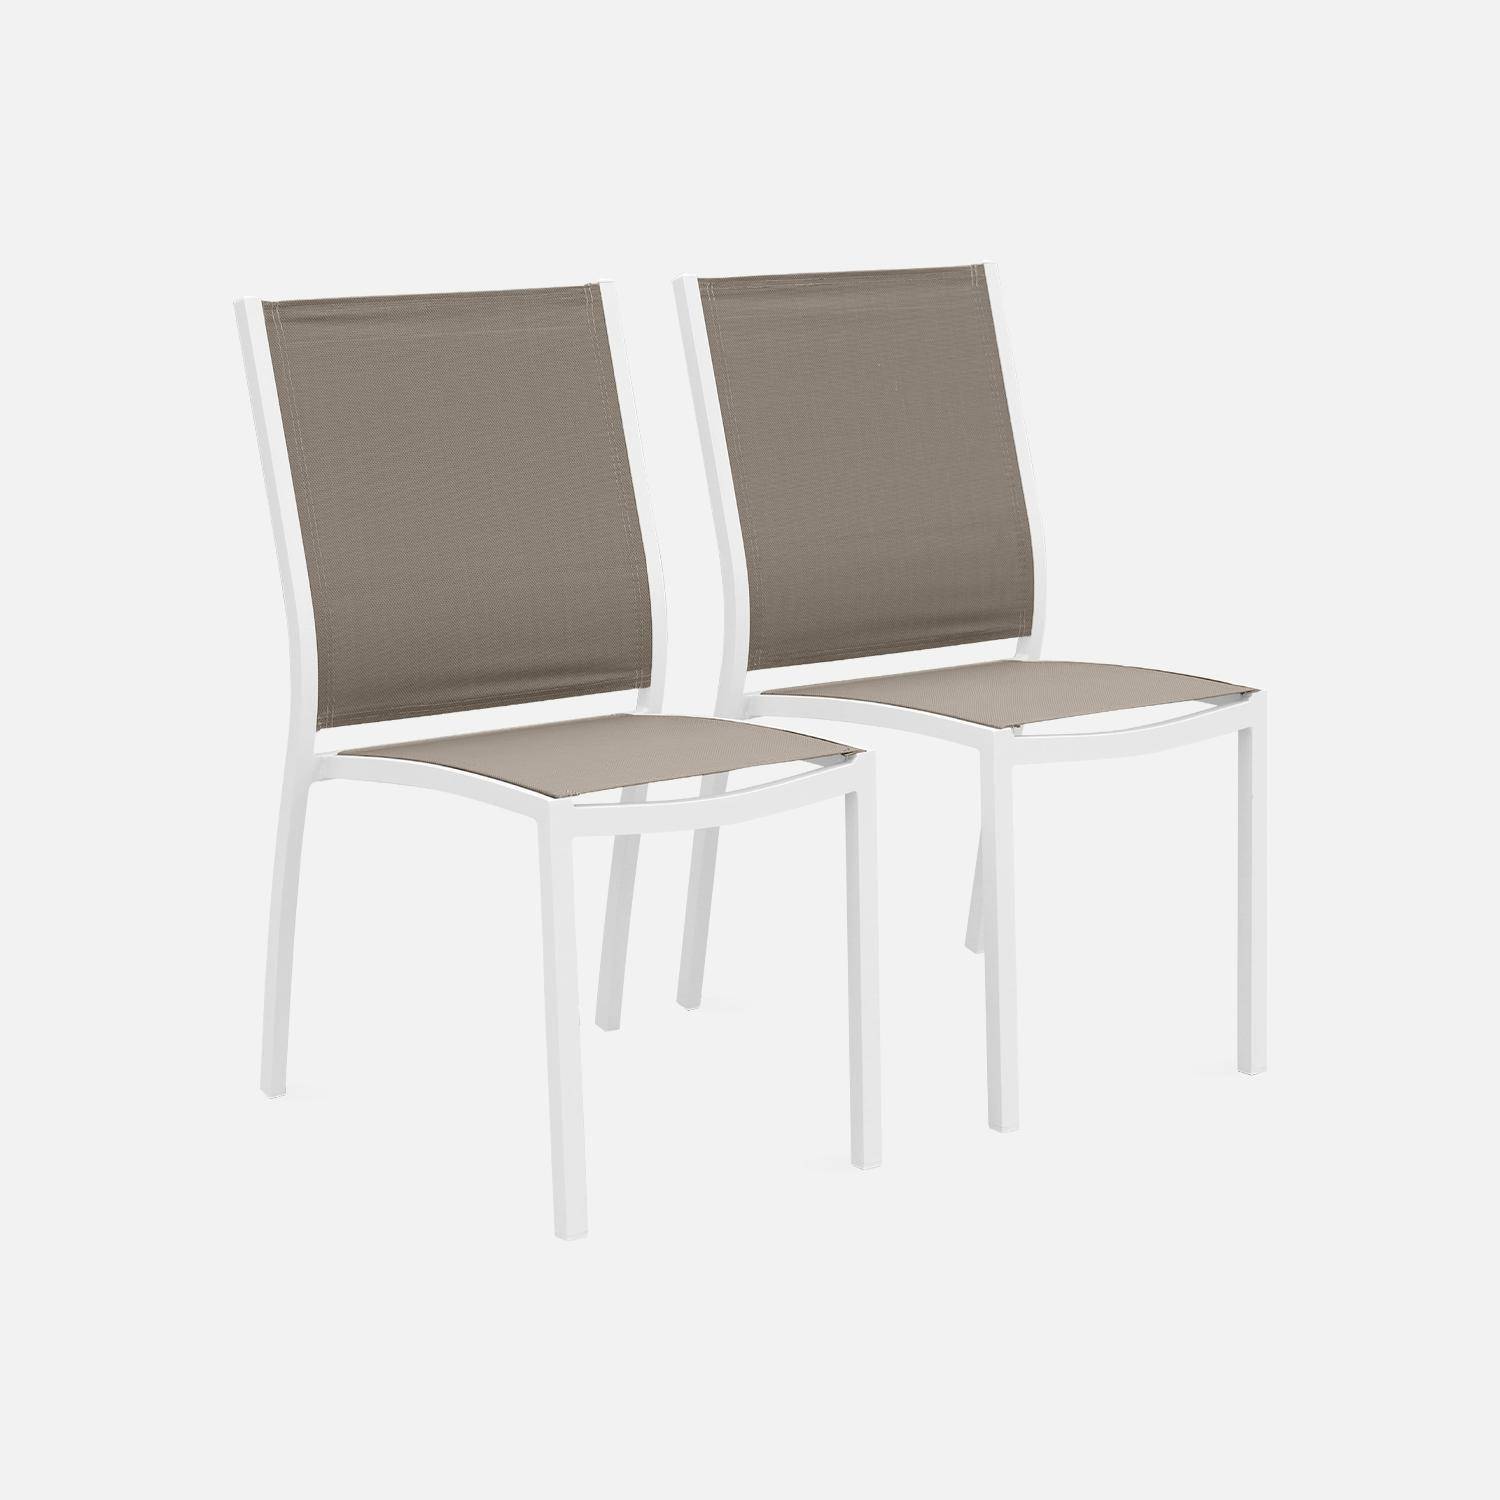 2er Set Gartenstühle - ORLANDO Farbe Weiß / Taupe - Gestell aus Aluminum, Sitz aus Textilene, stapelbar Photo1